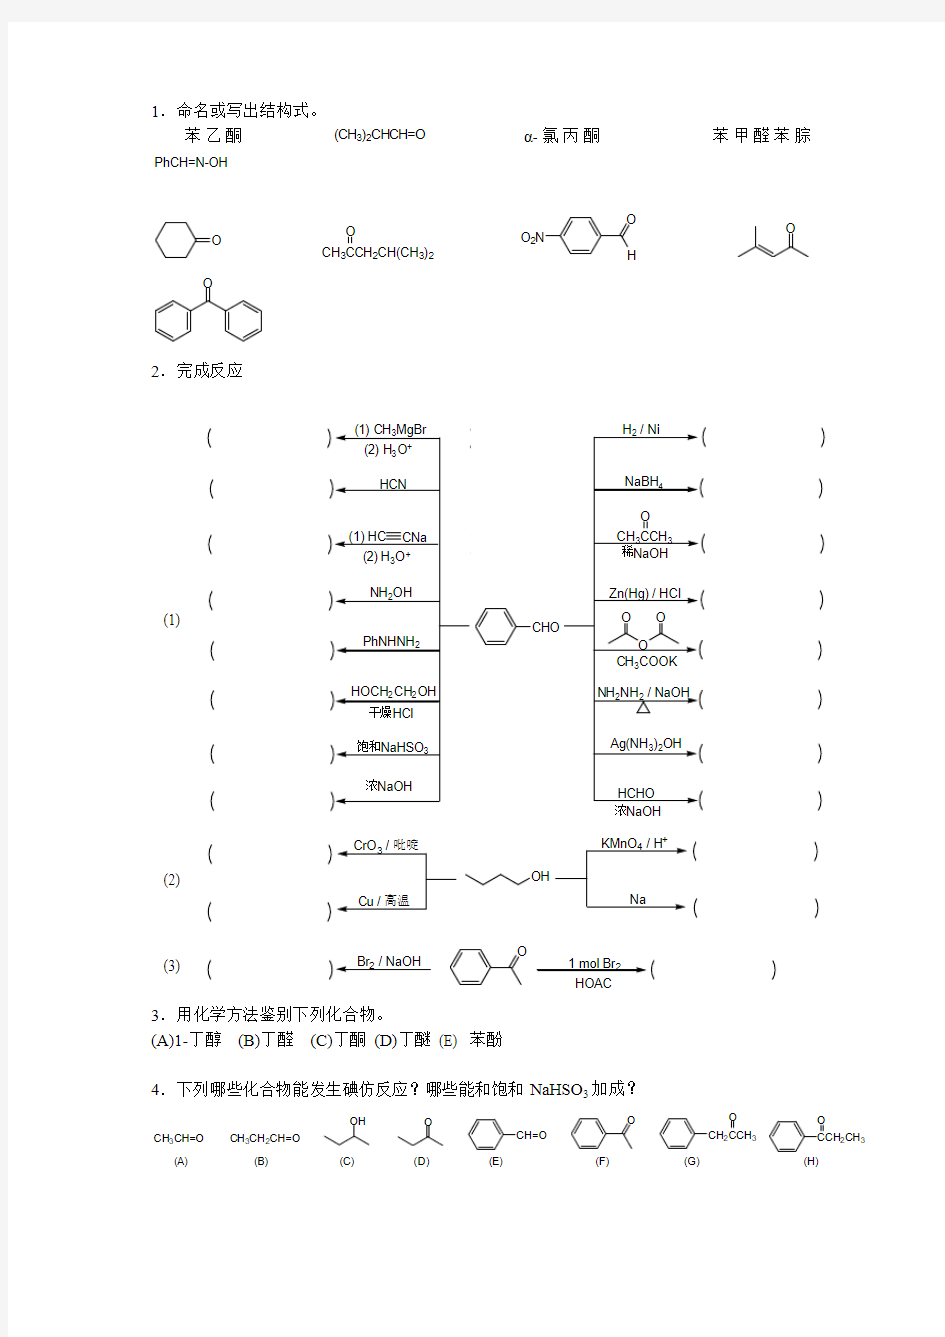 常州大学江苏工业学院有机化学复习考试题及答案第12章醛和酮习题